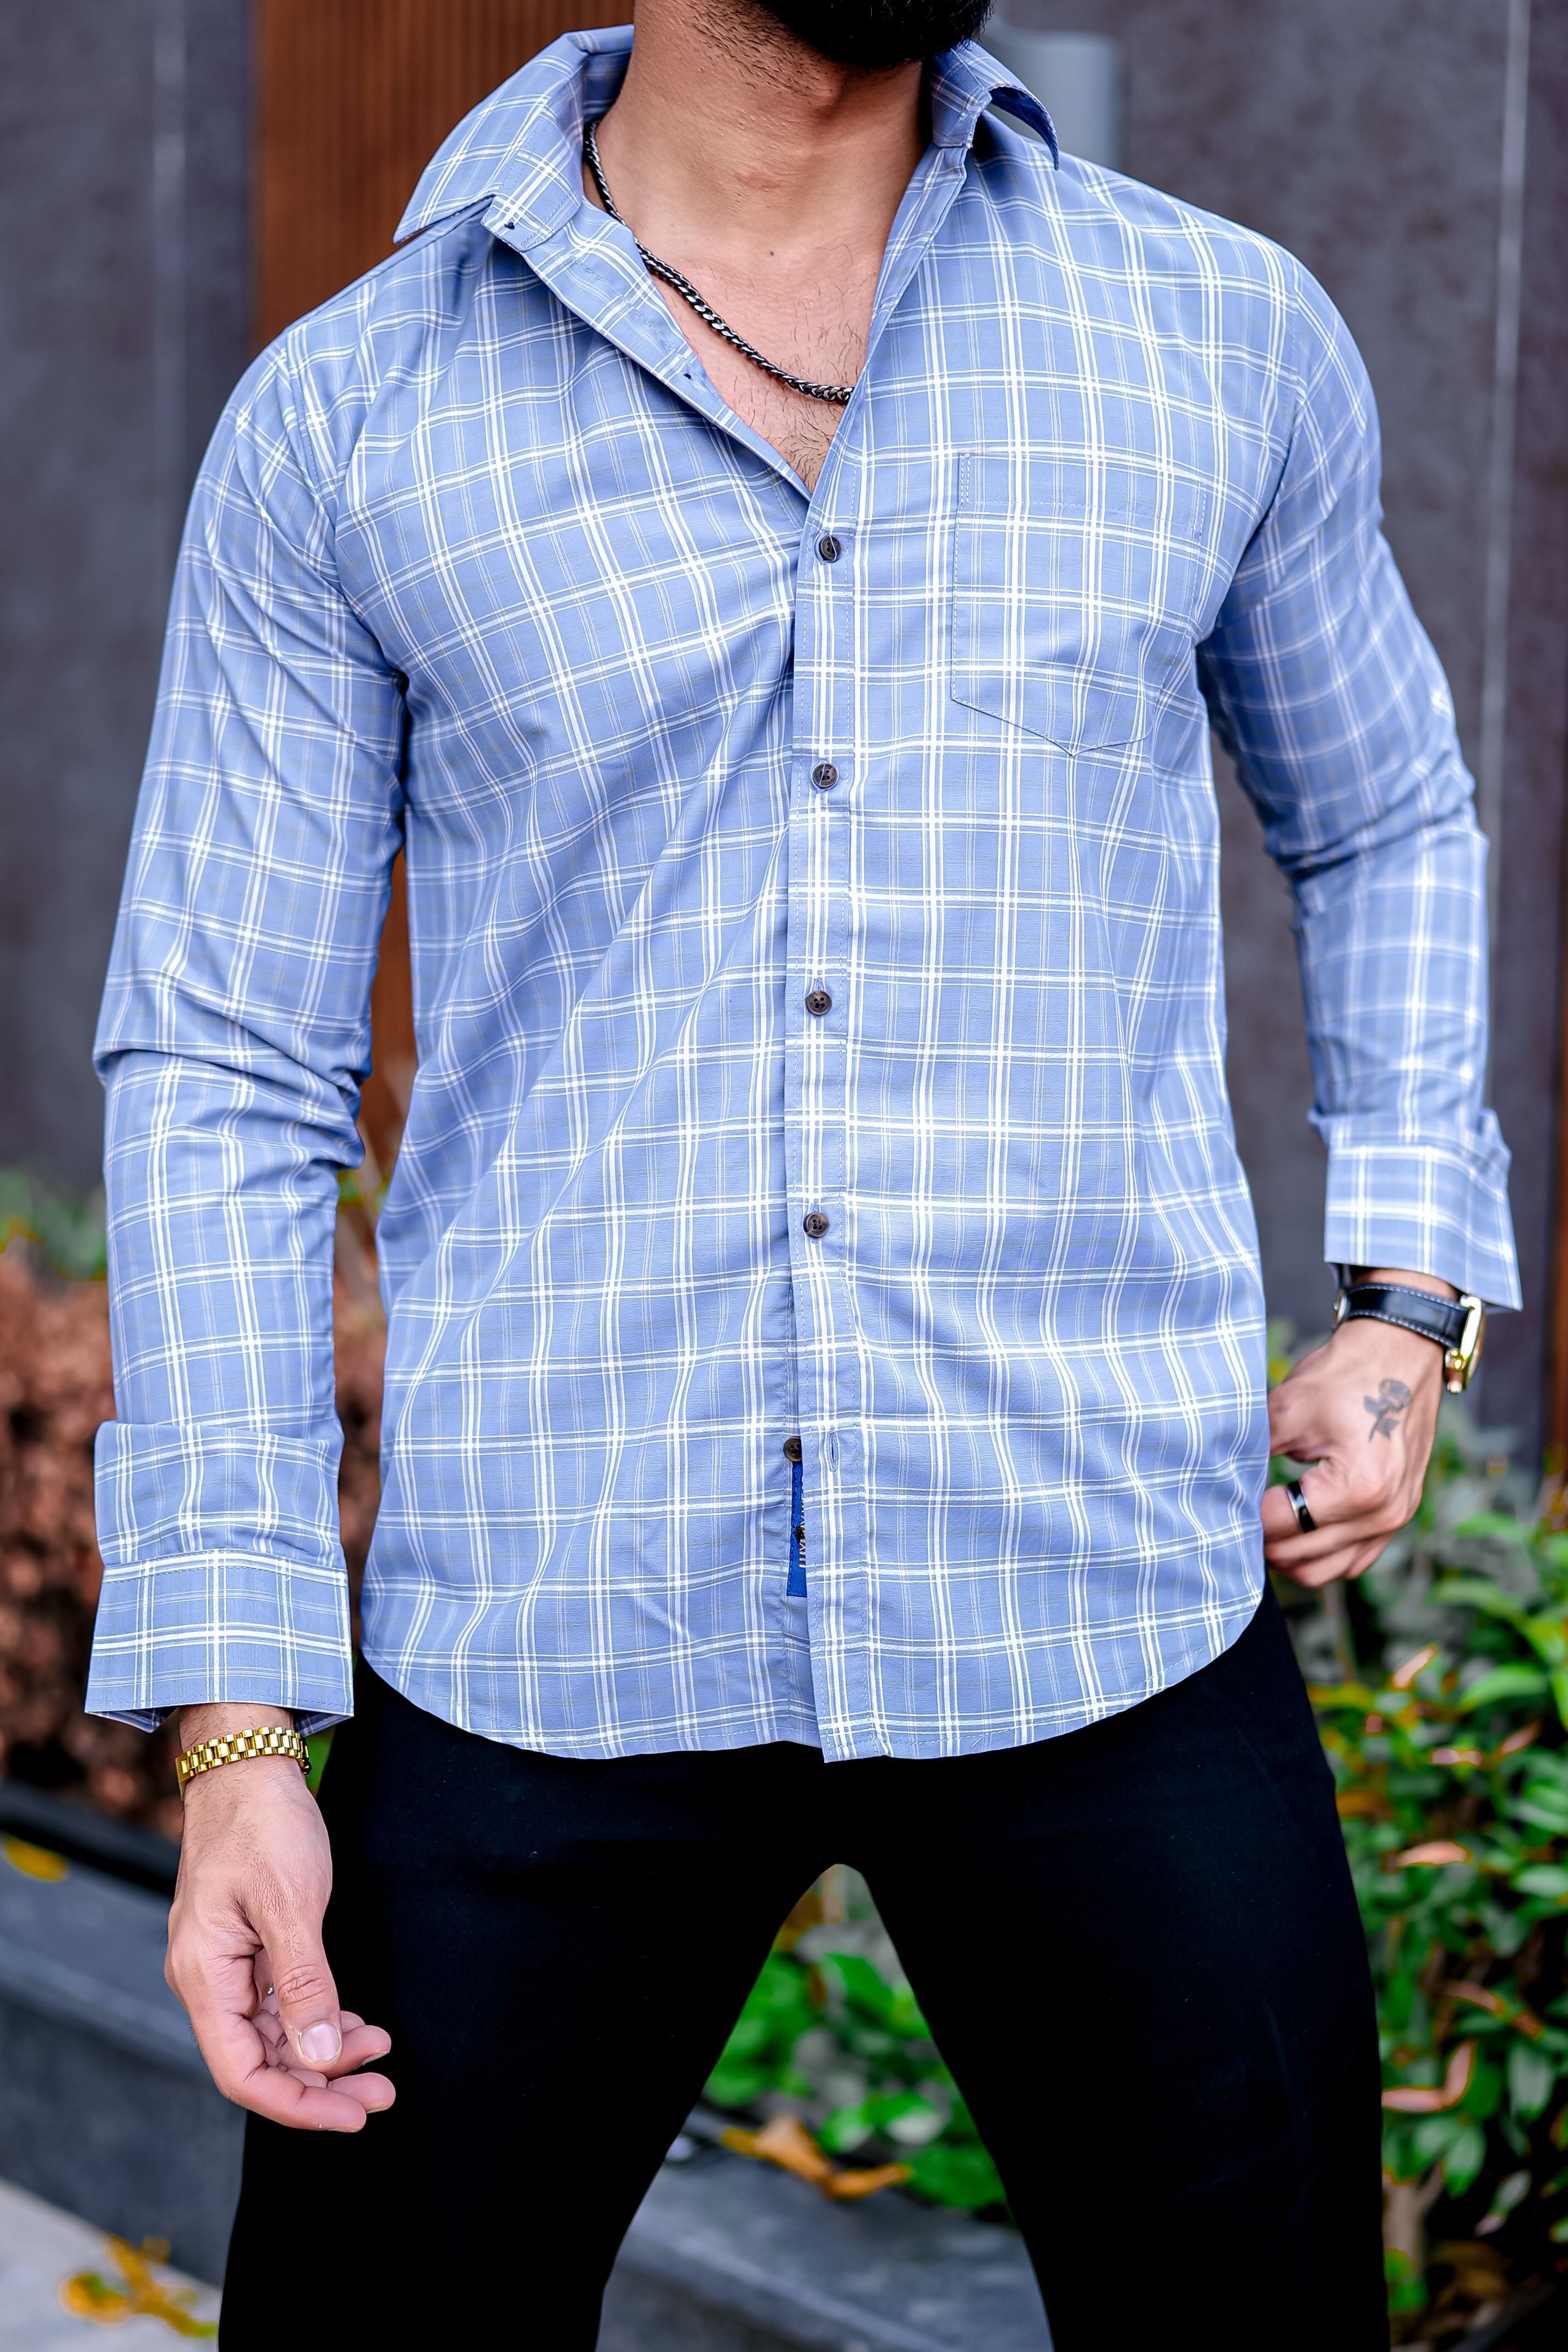 a man with a beard wearing a blue shirt